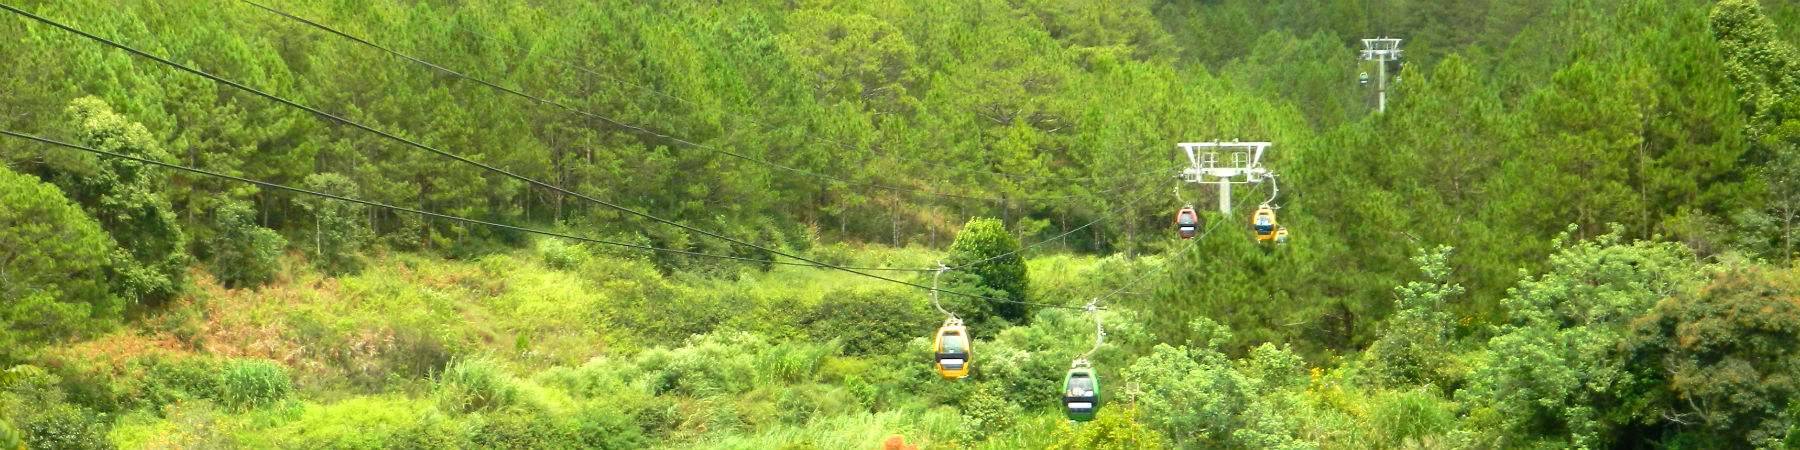 Robin Hill Cable Car near Dalat, Central Highlands